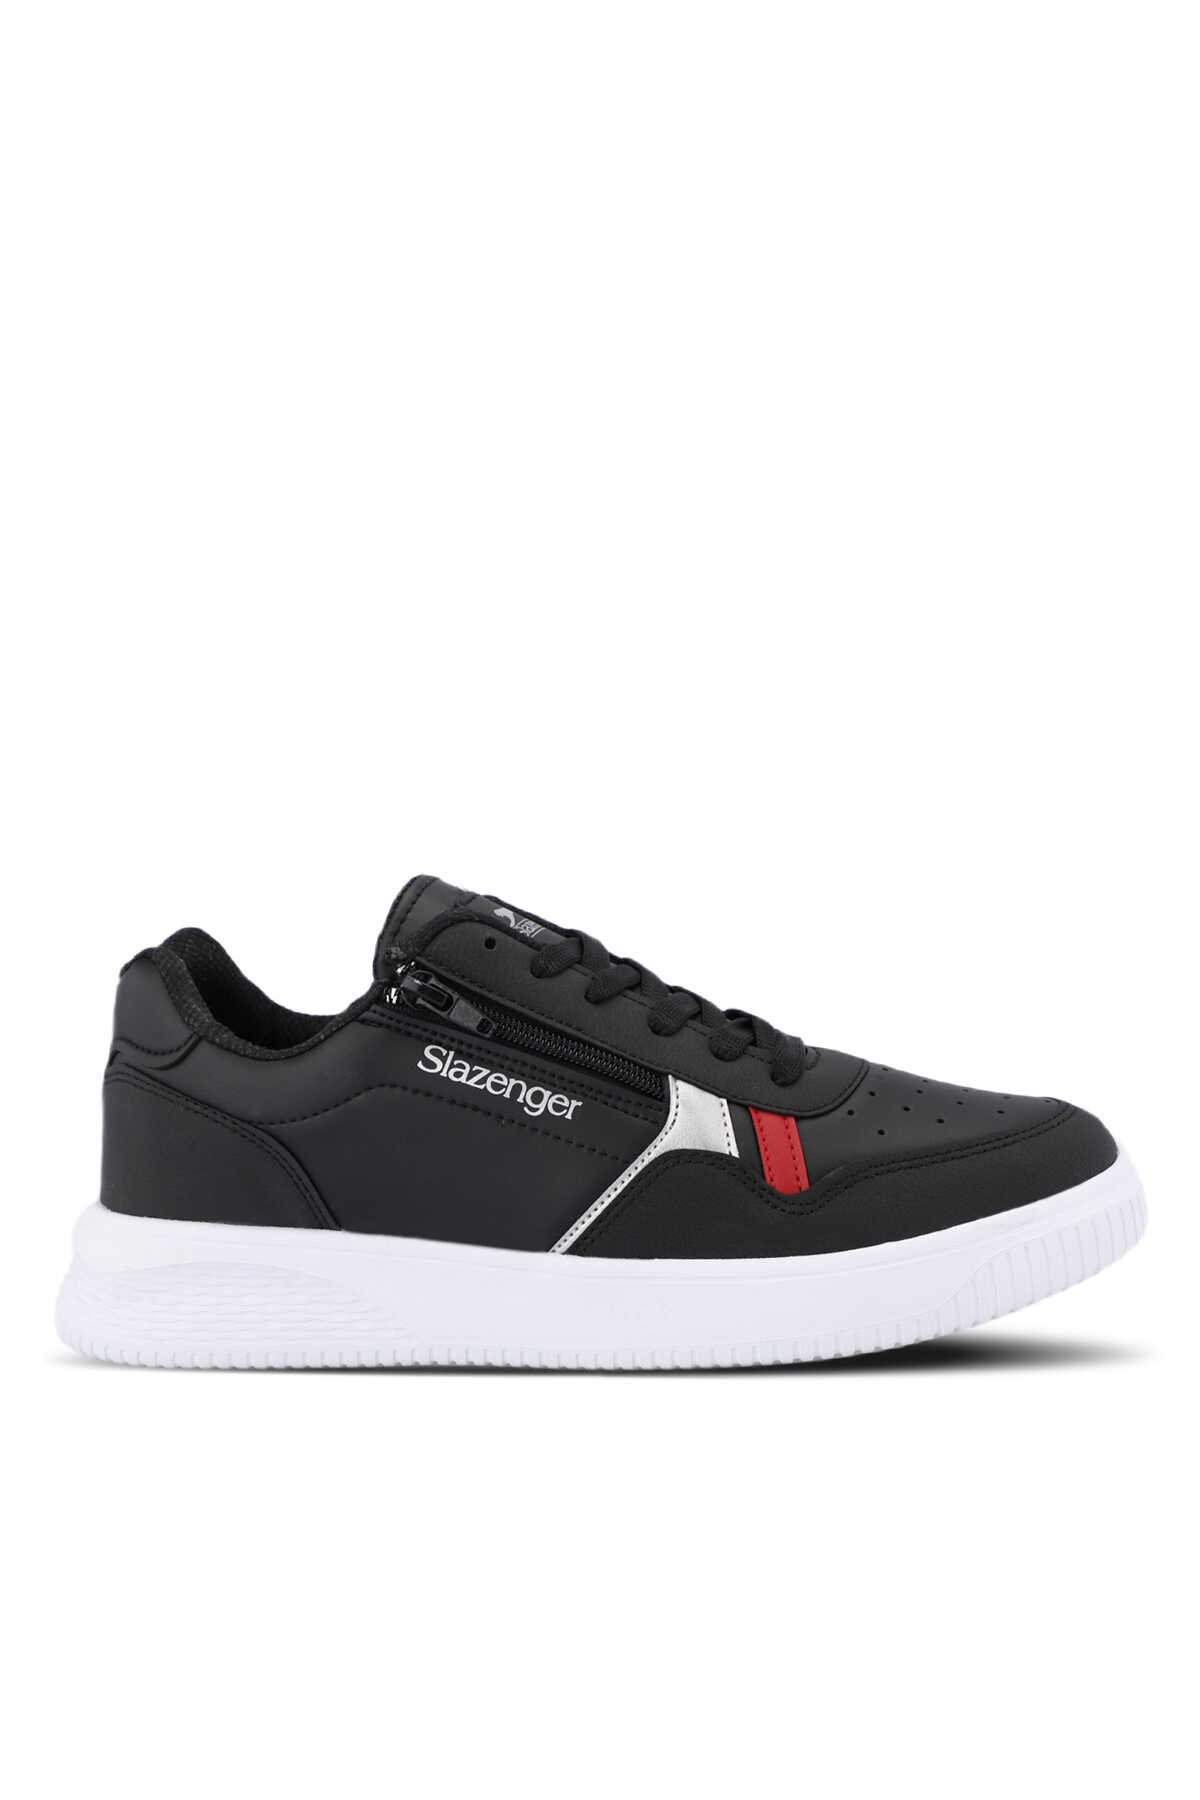 Slazenger - Slazenger MAJORITY I Sneaker Erkek Ayakkabı Siyah / Beyaz